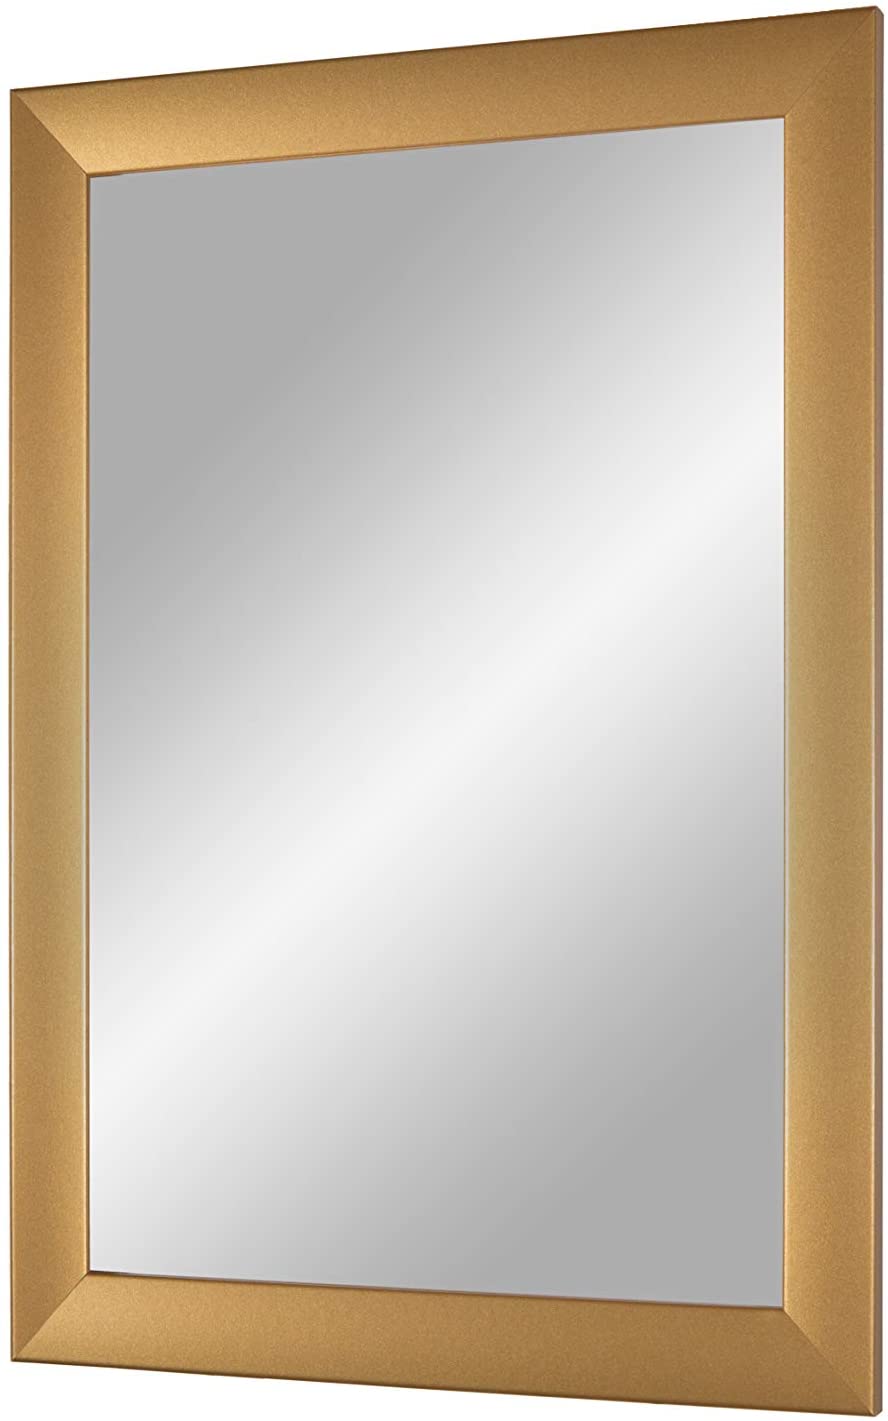 EXCLUSIV Wandspiegel nach Maß (Gold-schlicht), Maßgefertigter Spiegelrahmen inkl. Spiegel und stabiler Rückwand mit Aufhängern